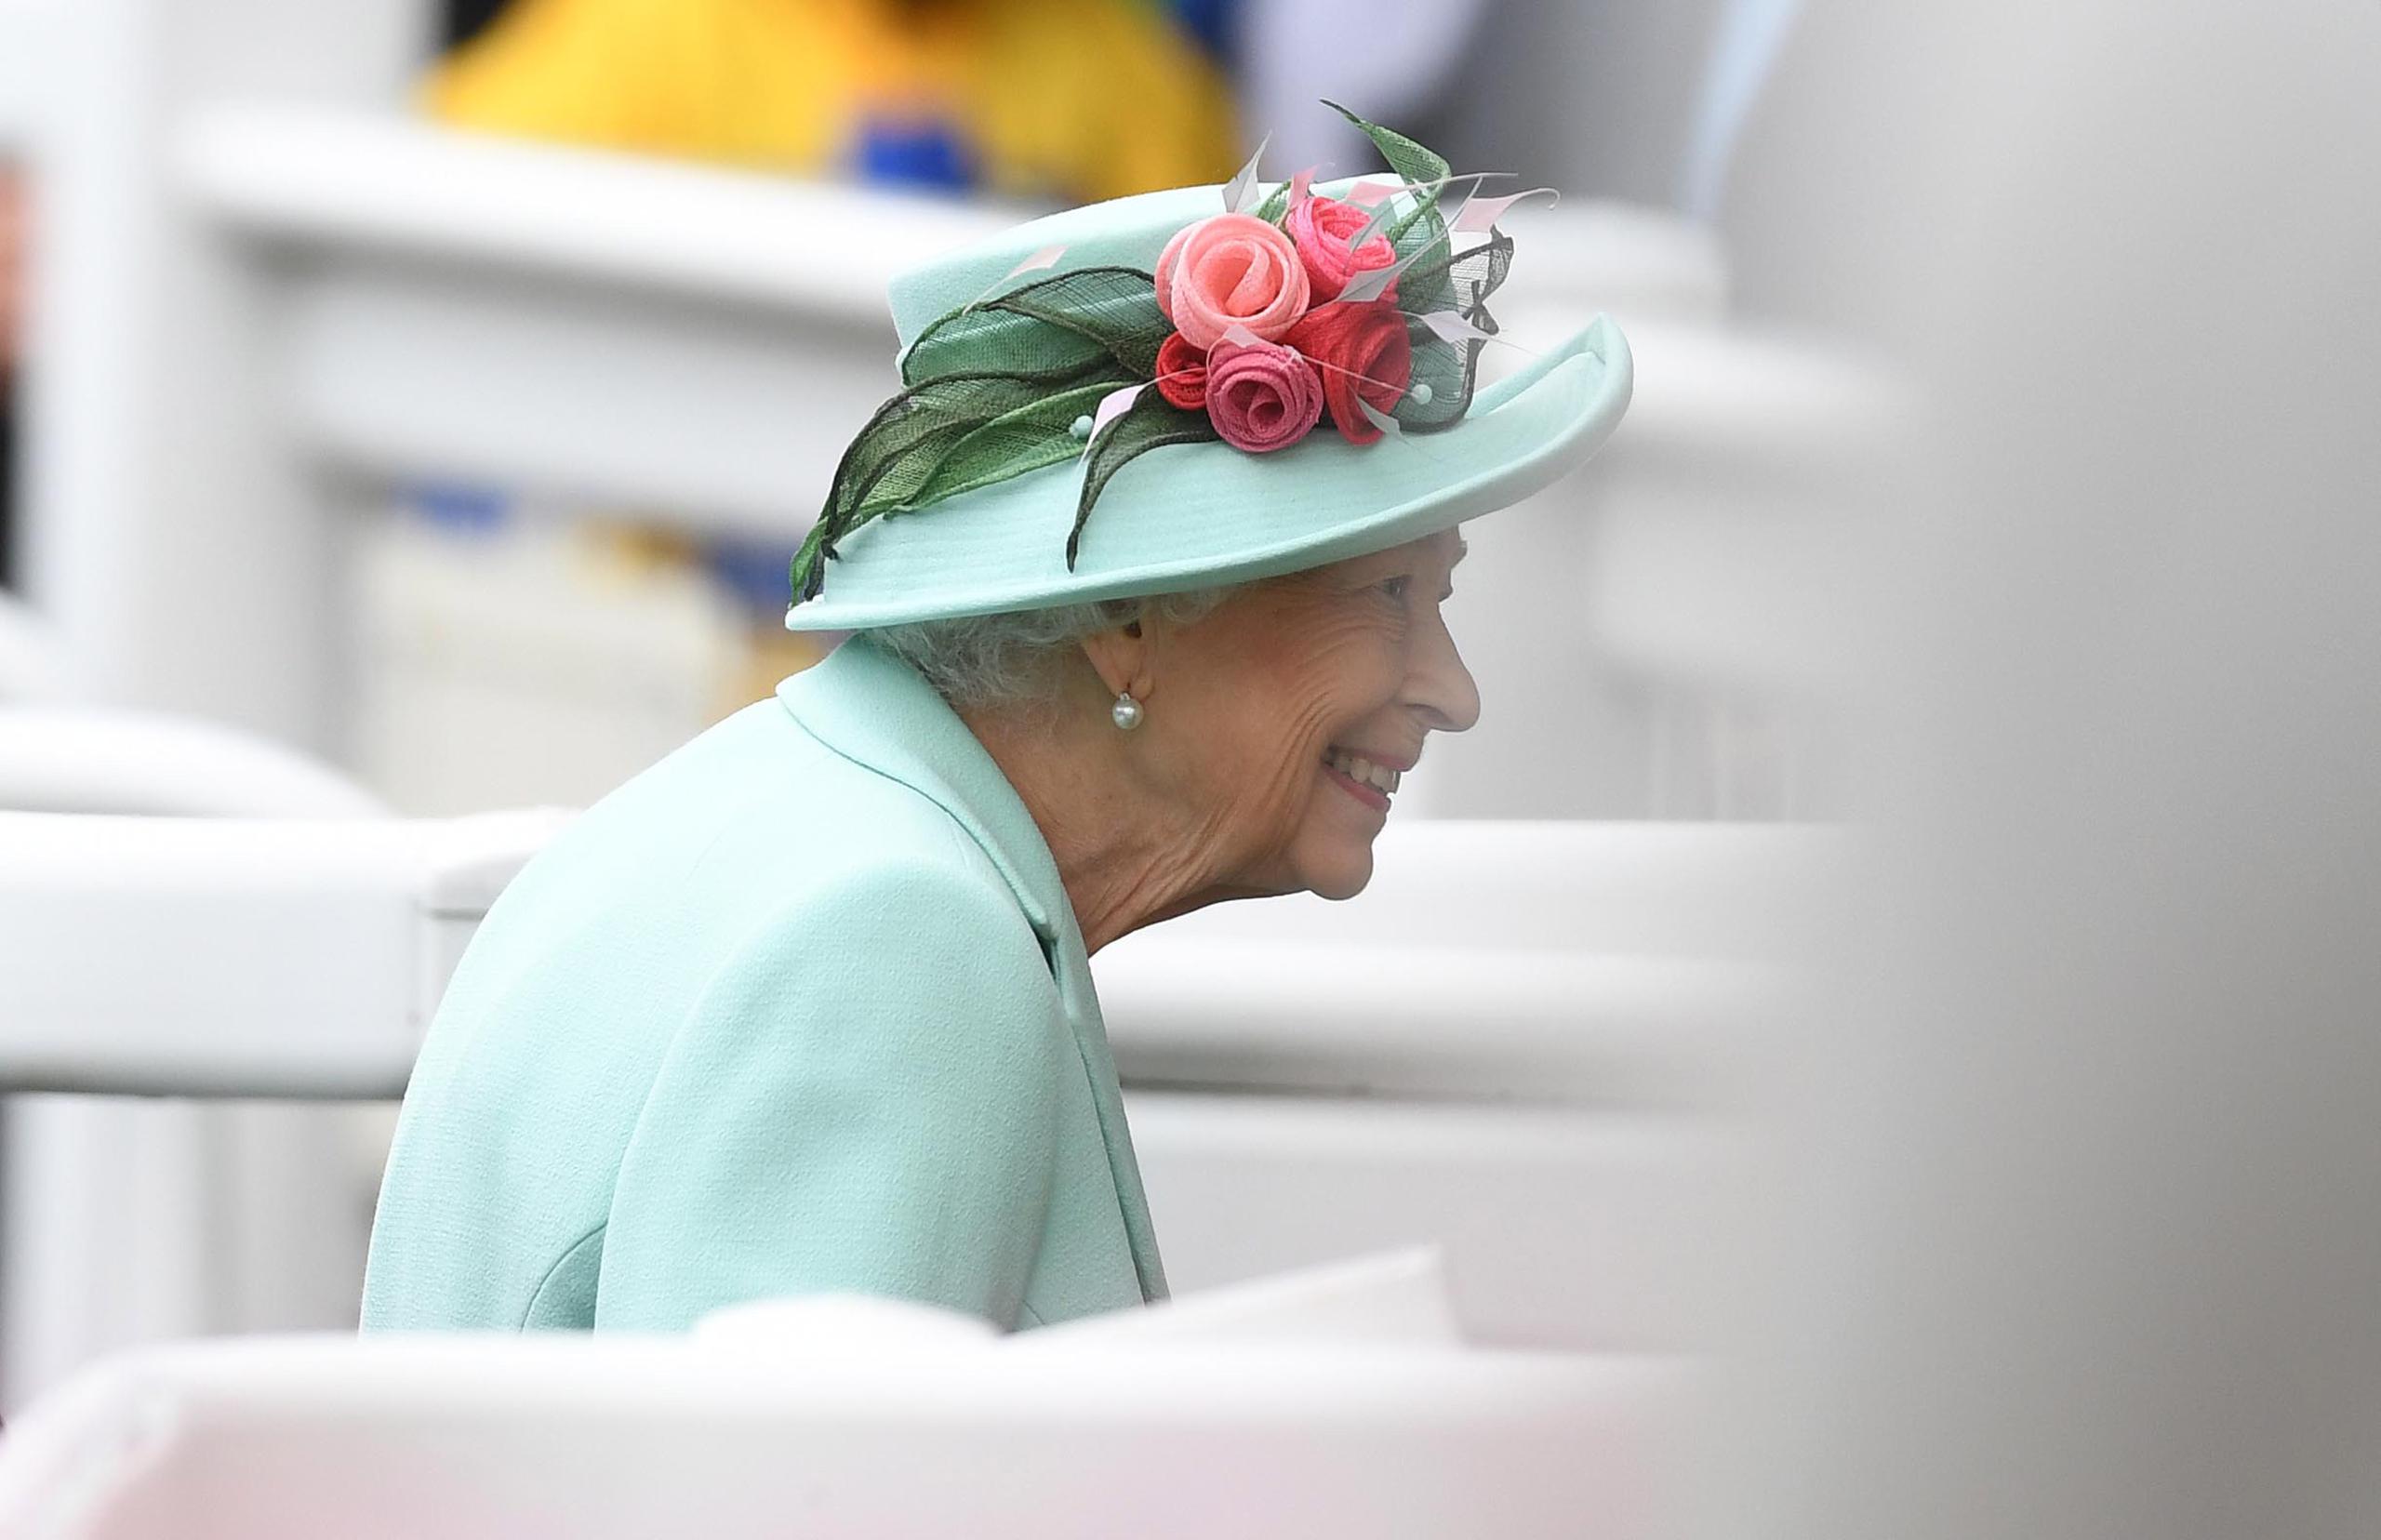 La emisión de “Elizabeth: The Unseen Queen” (“Isabel, la reina nunca vista”) forma parte de la programación oficial que celebrará a comienzos de junio el septuagésimo aniversario desde que la reina asumió la corona, lo que ya la ha convertido en la monarca más longeva del país.